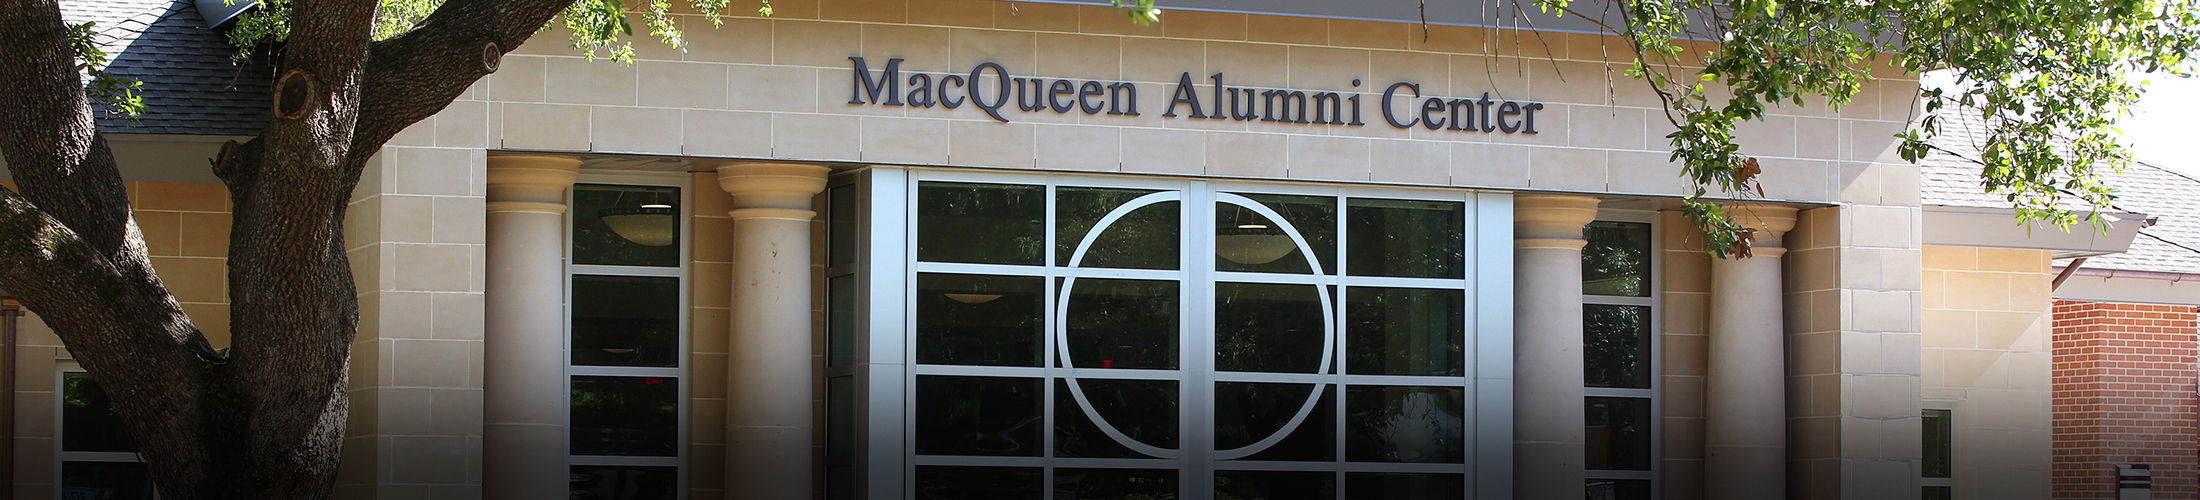 MacQueen Alumni Center